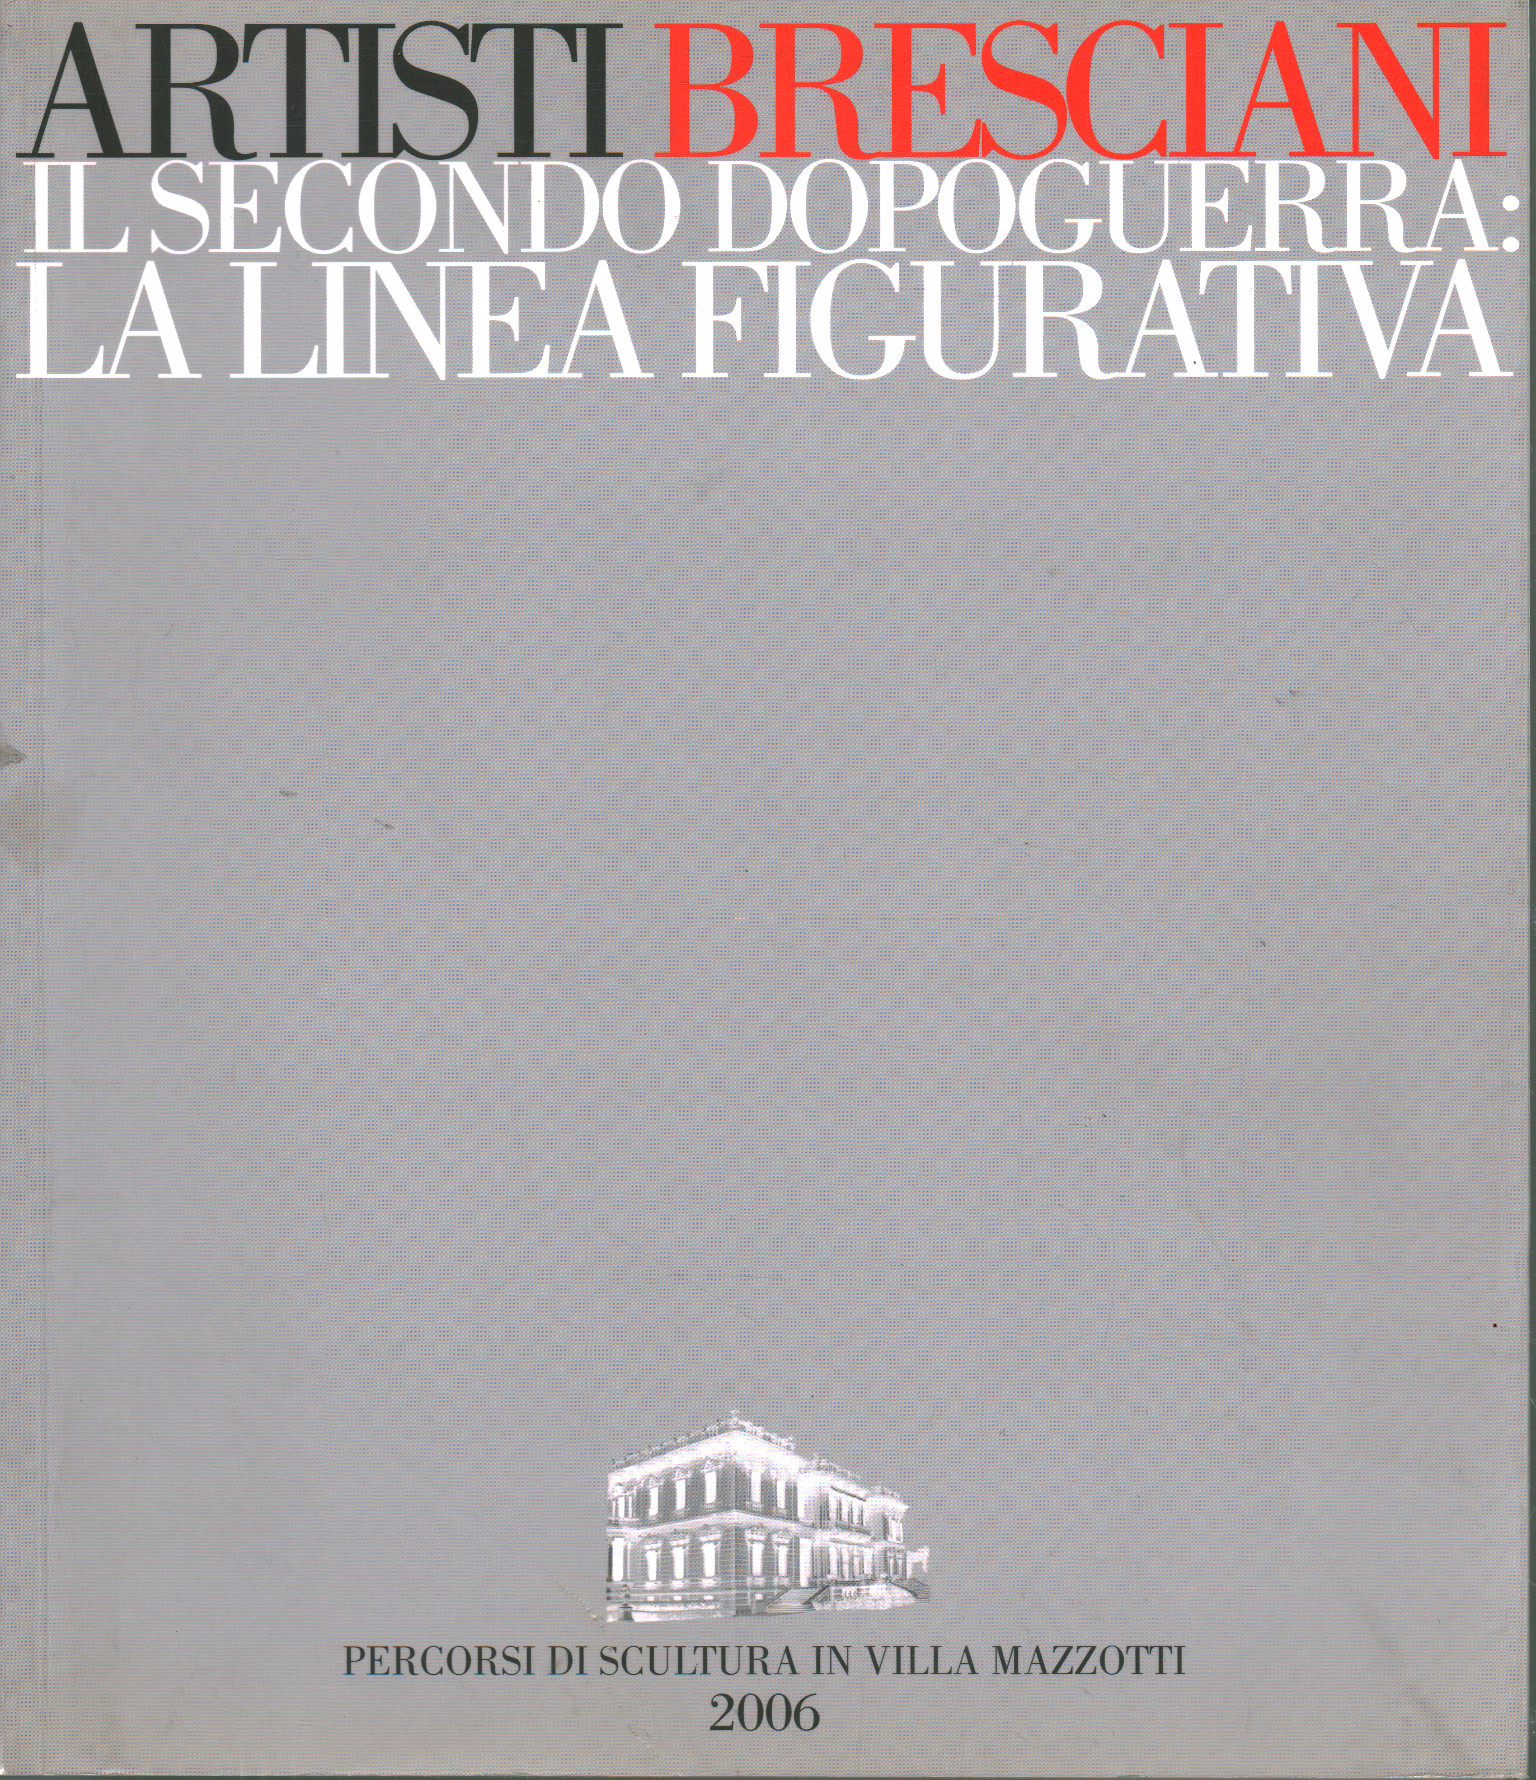 The second post-war period in Brescia: La li